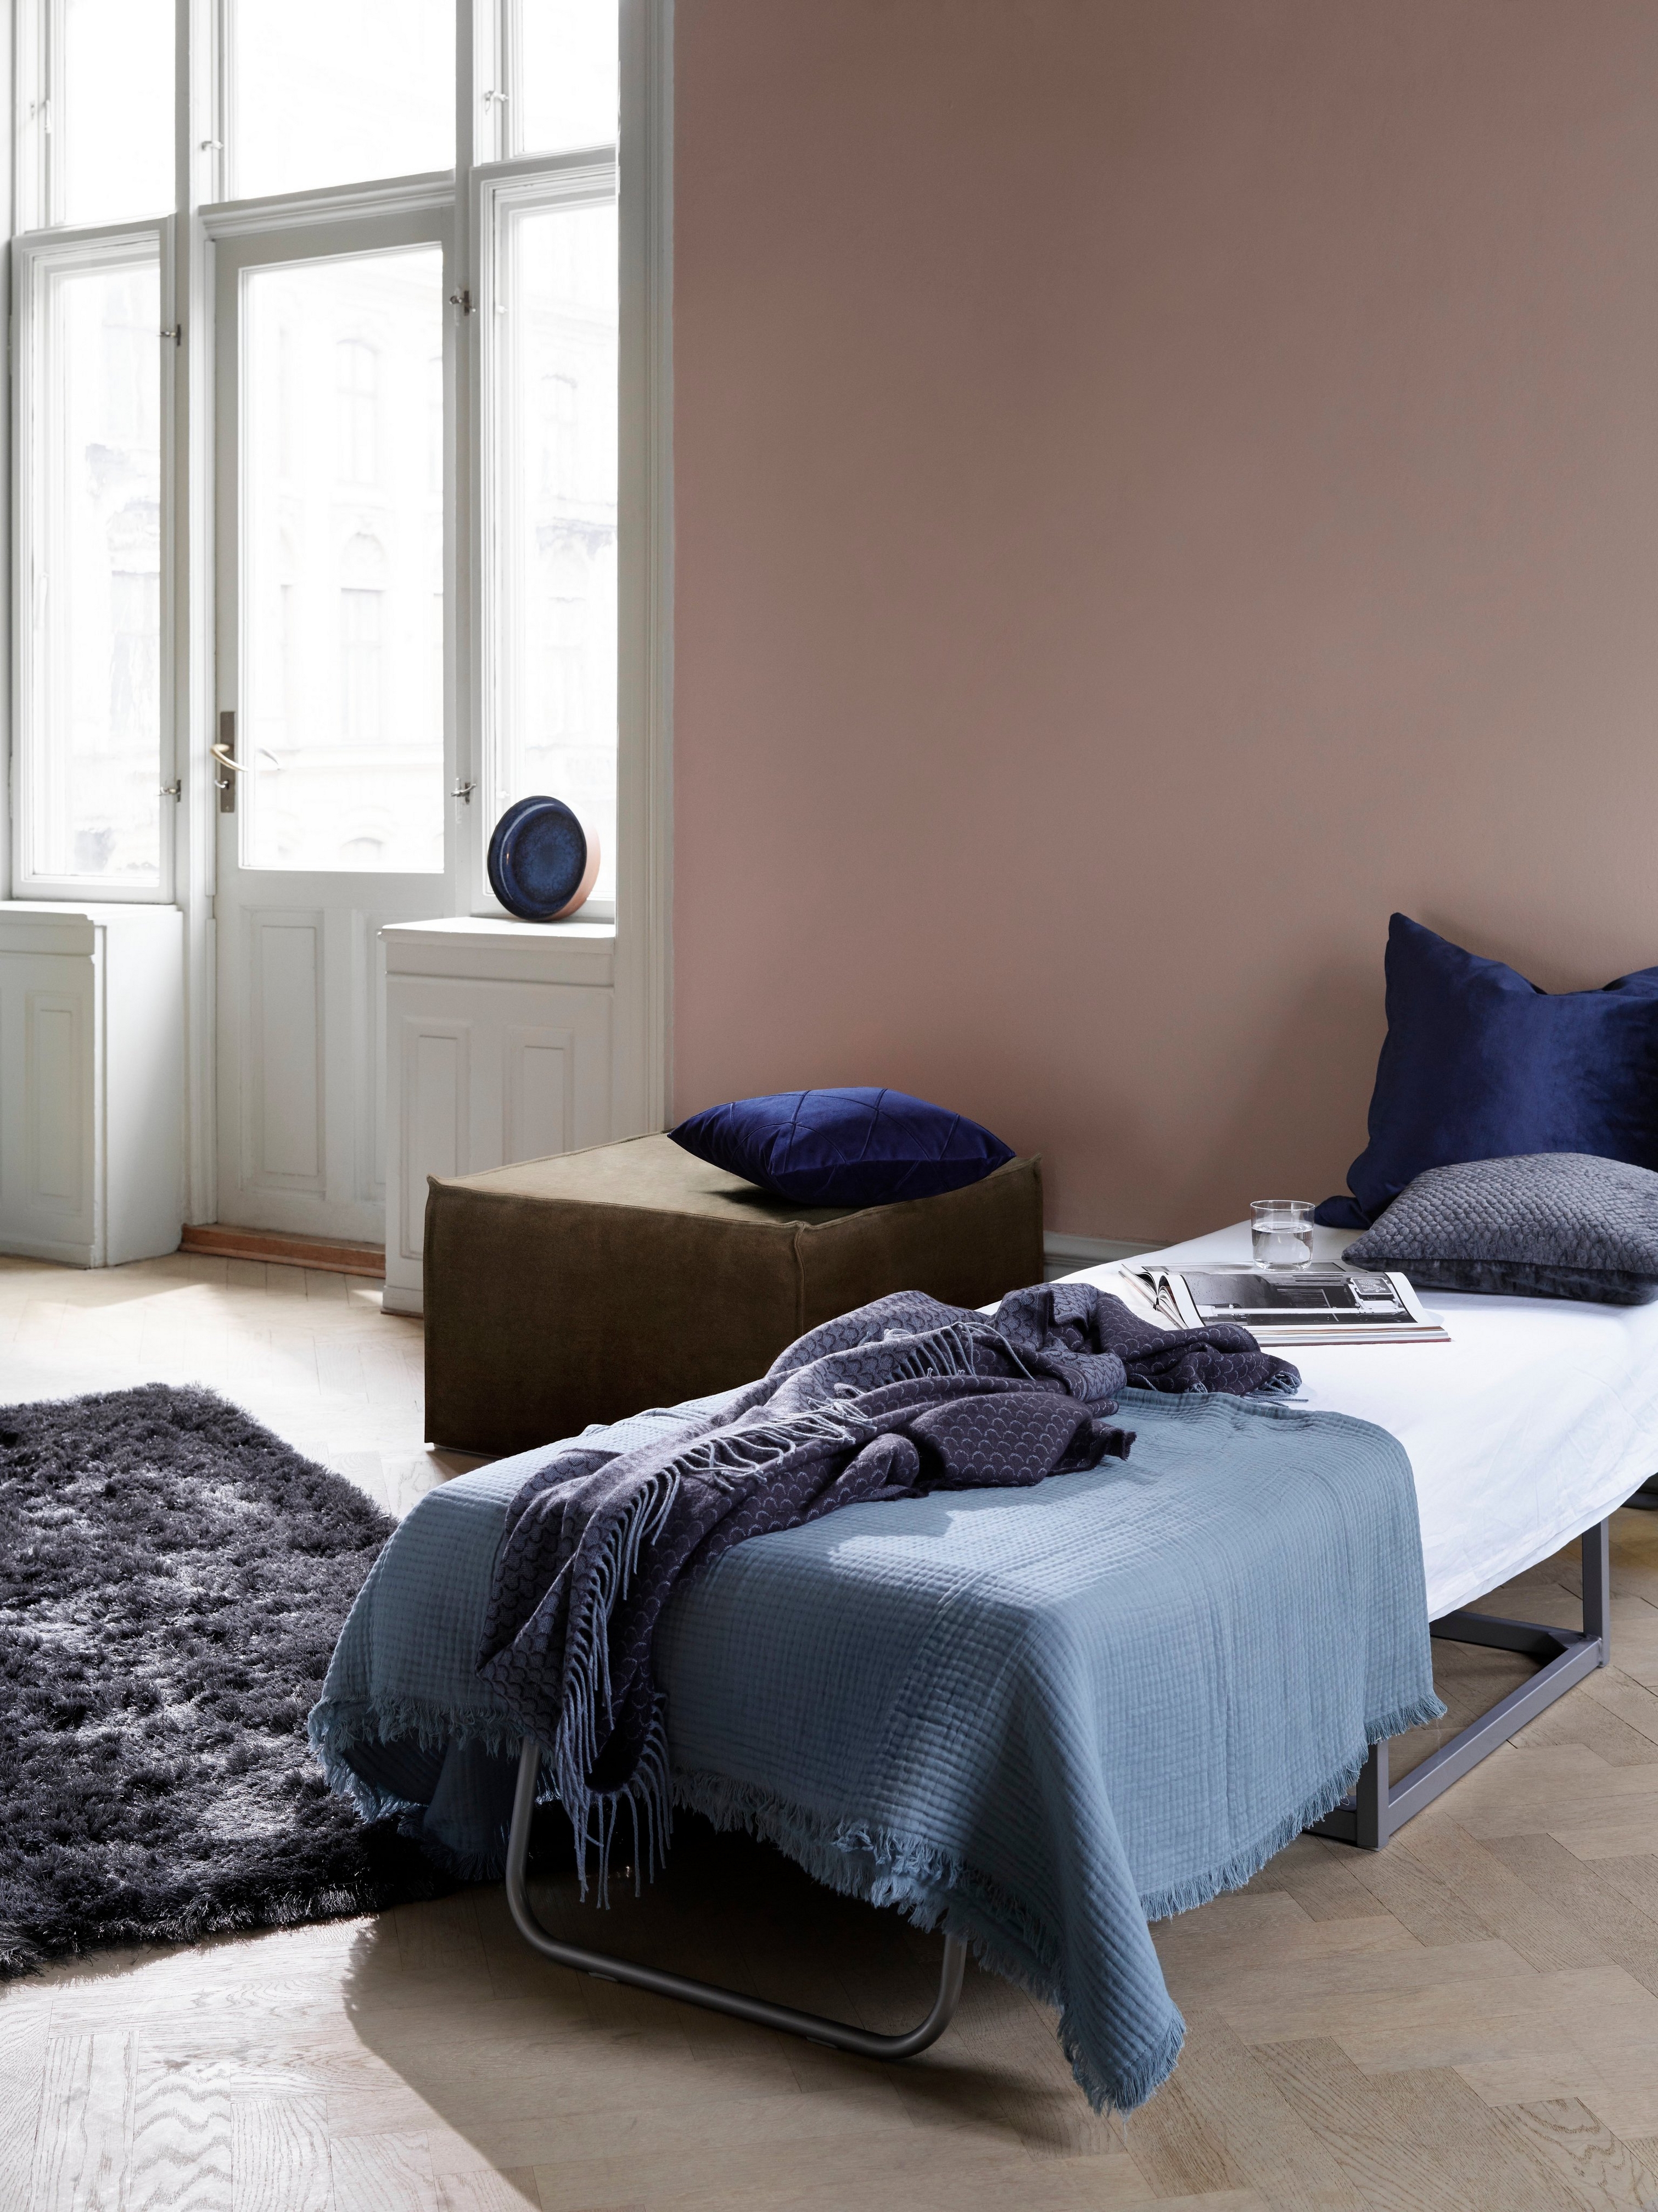 房间内摆放着客床、蓝色床上用品和深色毛绒地毯，明亮的窗户边摆放着 Xtra 脚凳。